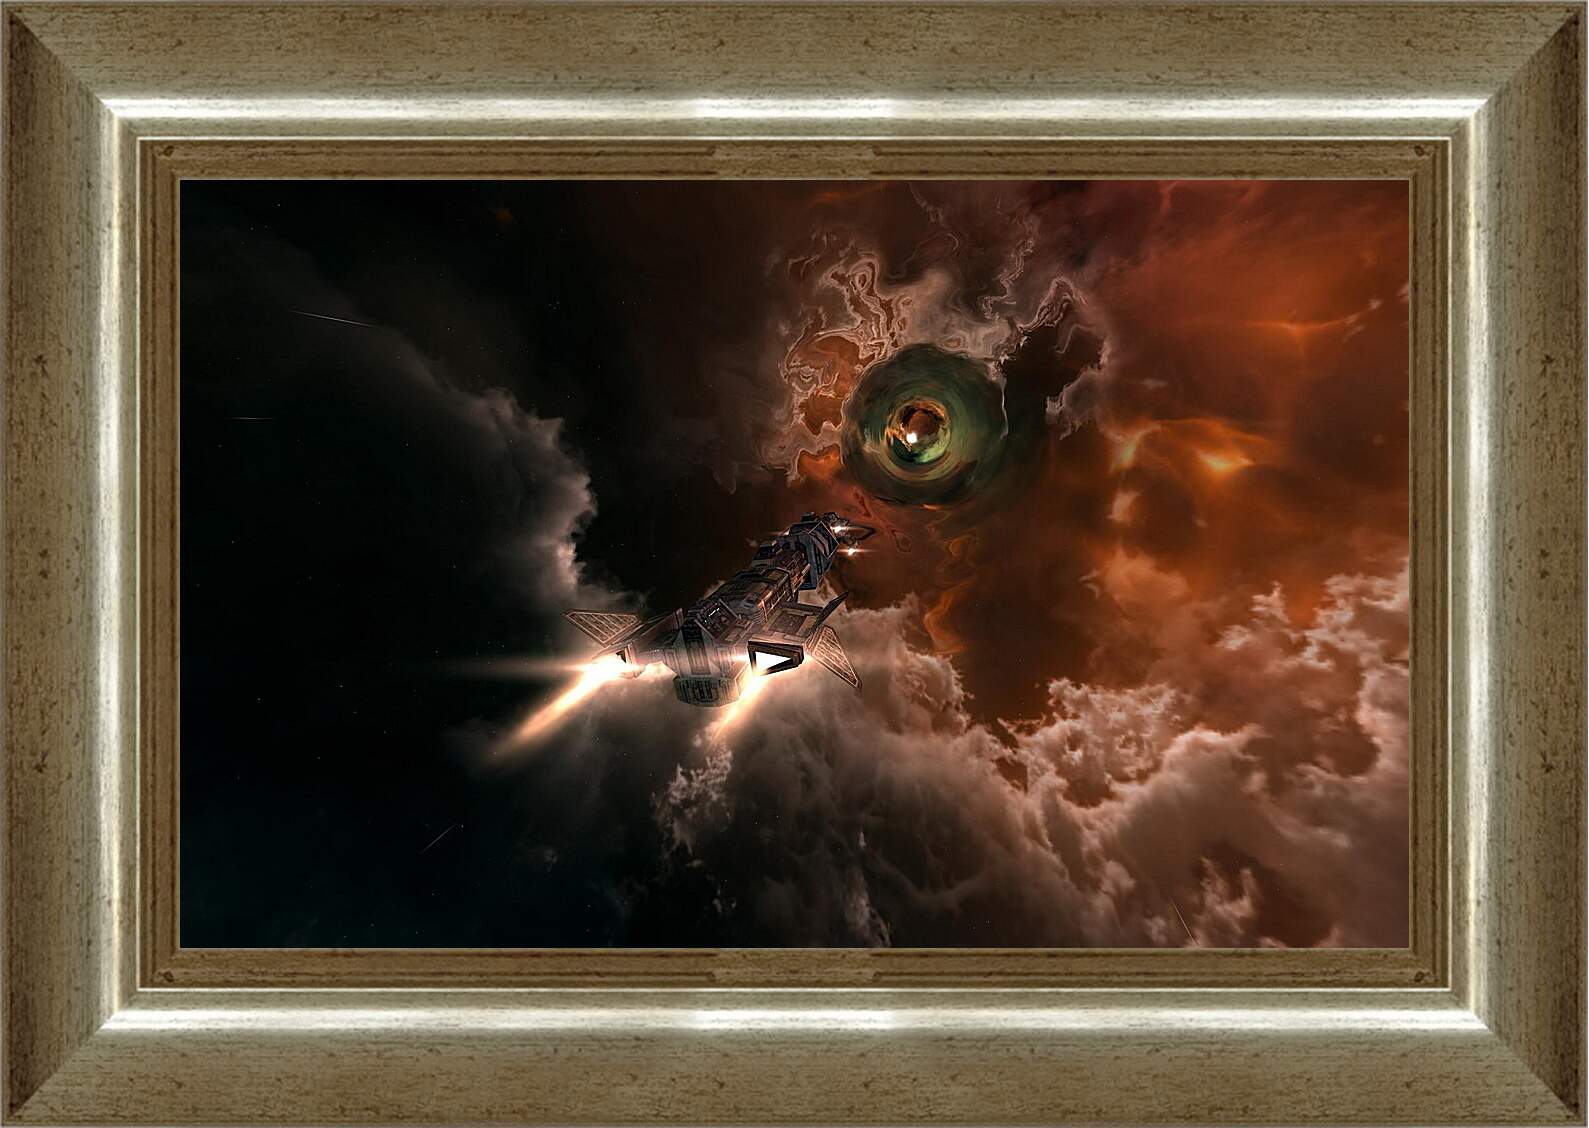 Картина в раме - Eve Online
